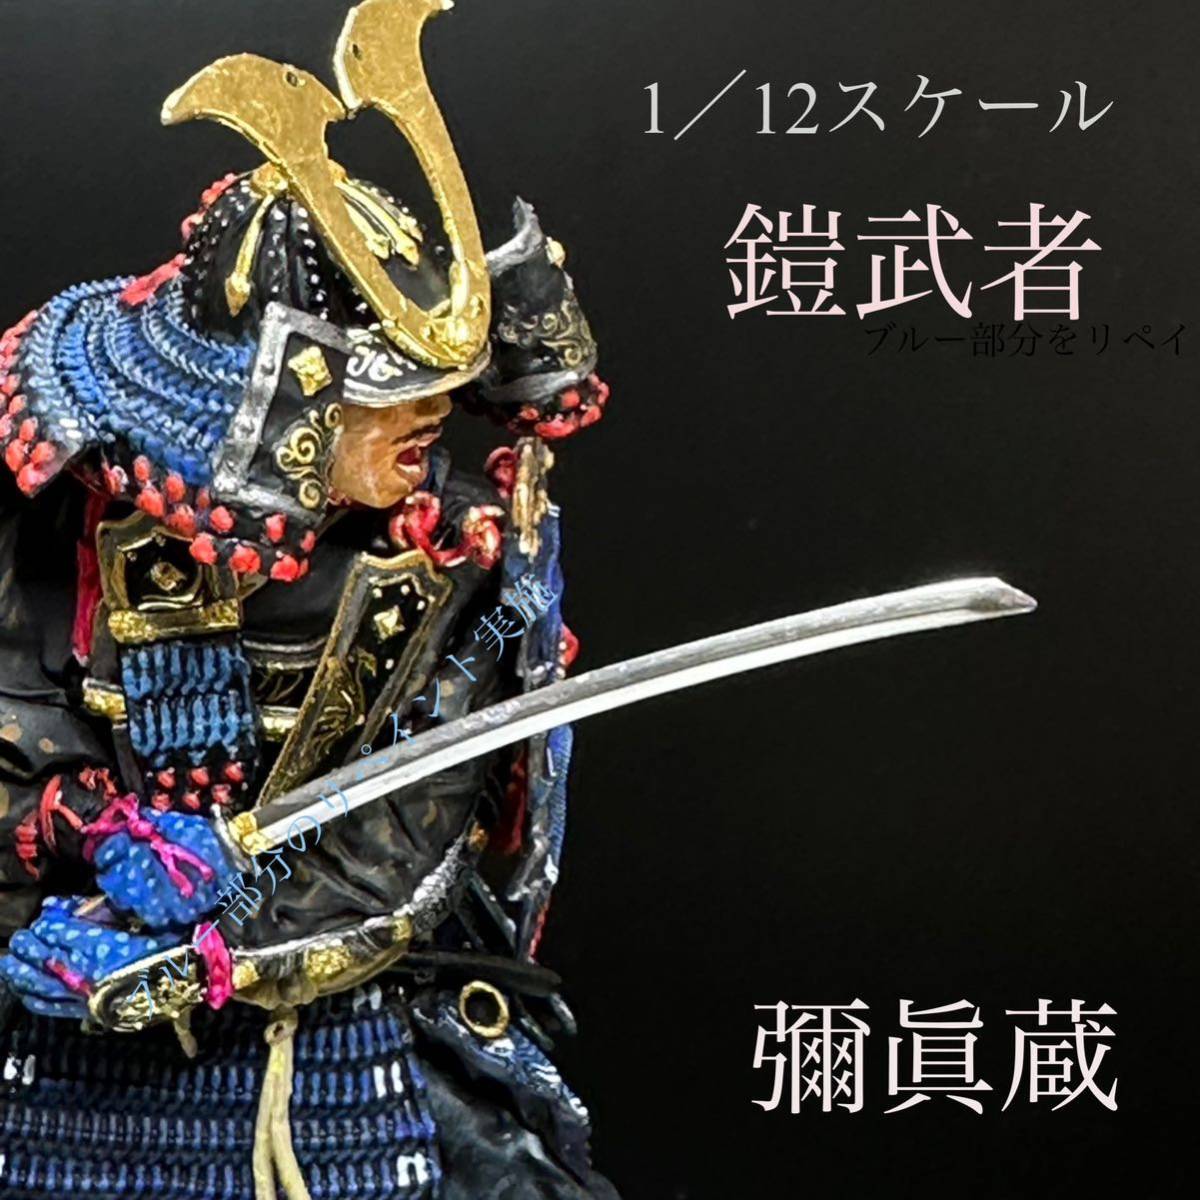 PLAMAX 1/12 鎌倉時代の鎧武者 塗装済み完成品 兜の前立てには金箔フィニッシュ貼付け済みの画像1